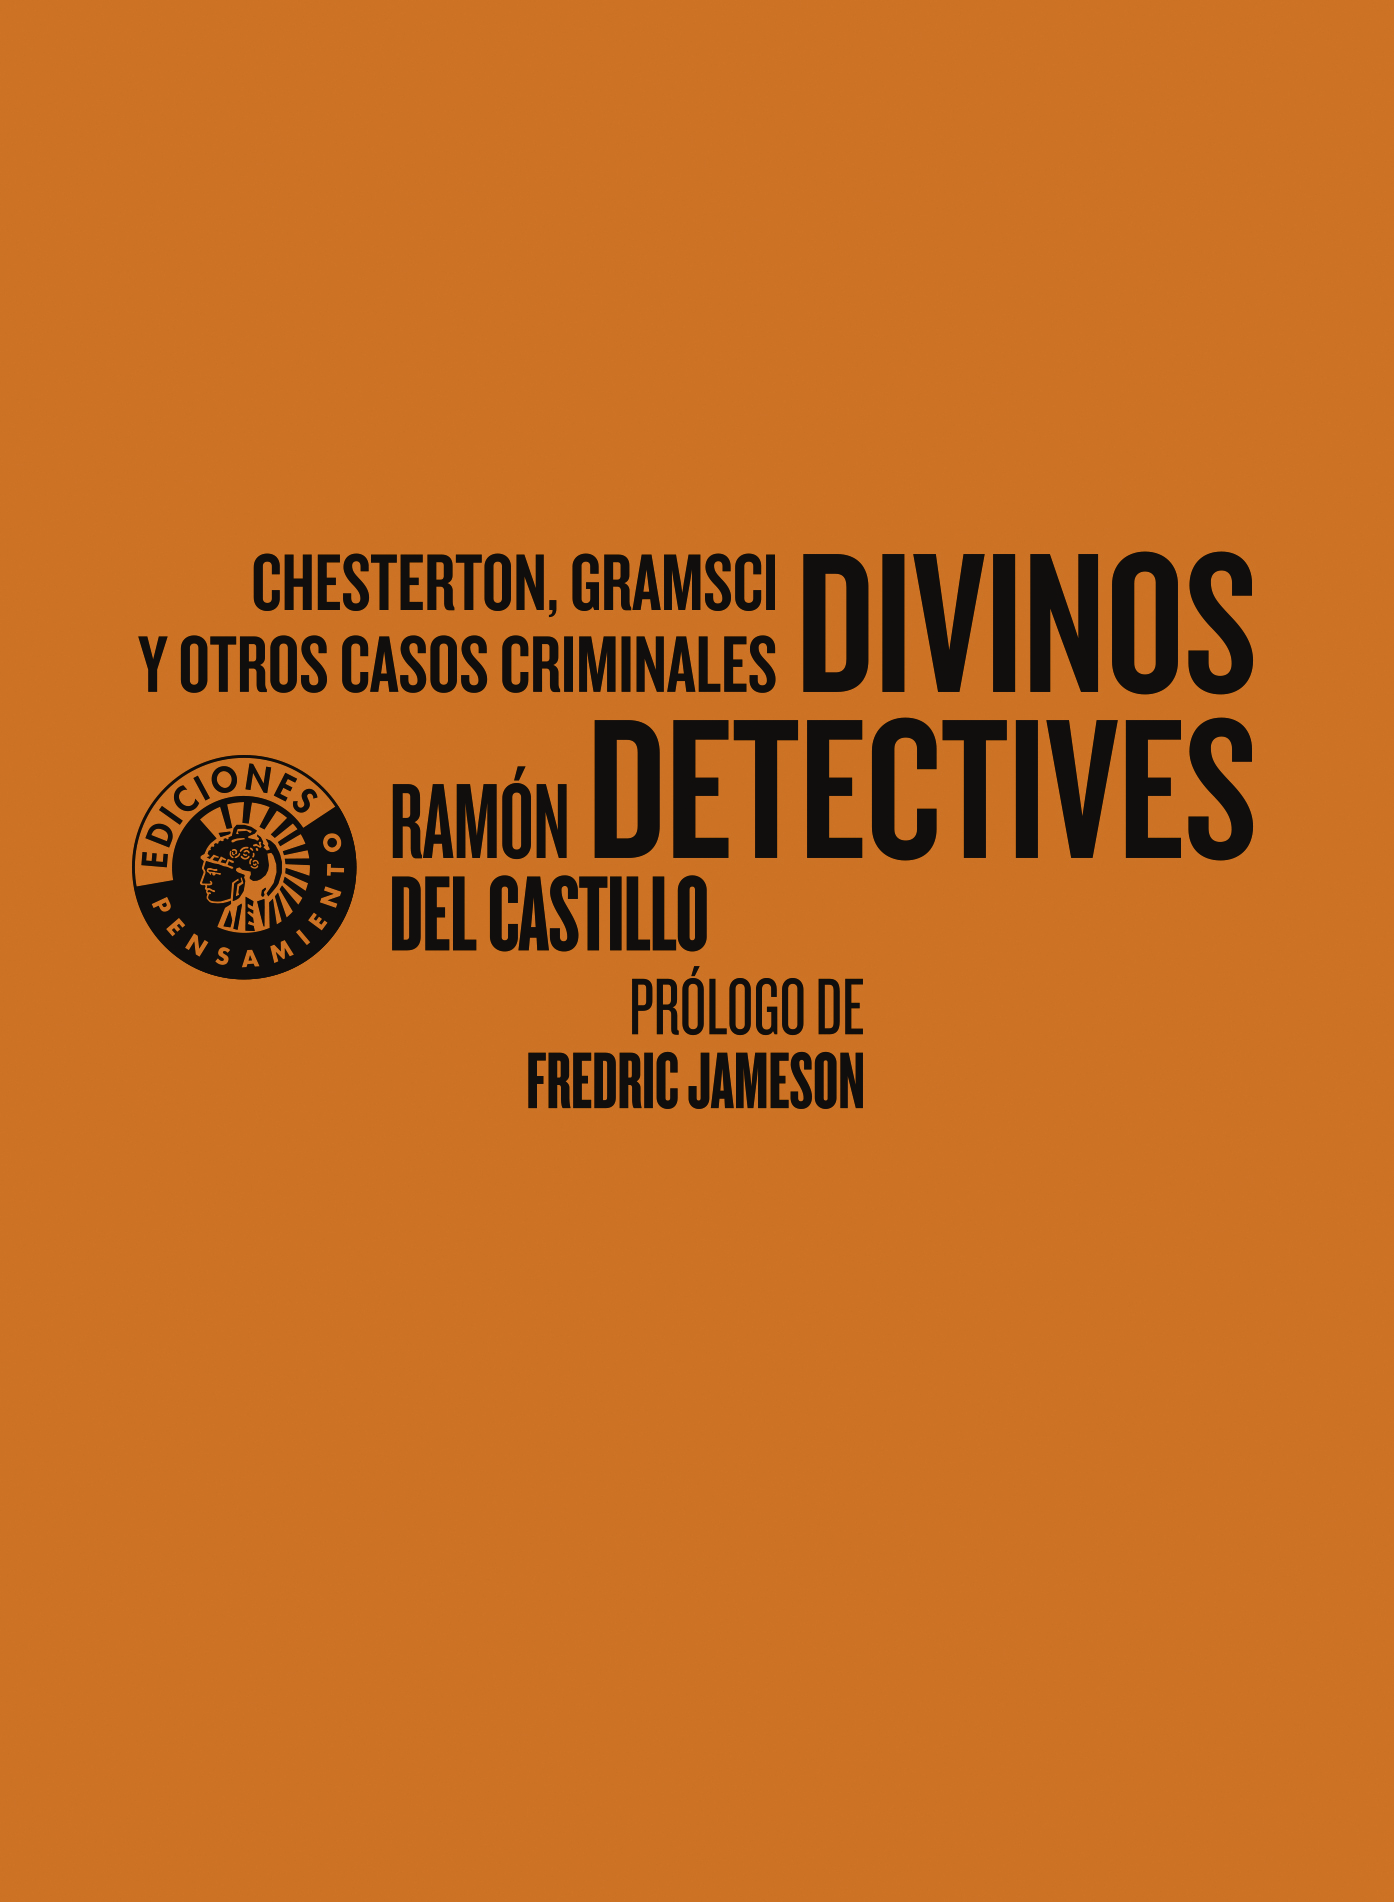 Divinos detectives   «Chesterton, Gramsci y otros casos criminales»